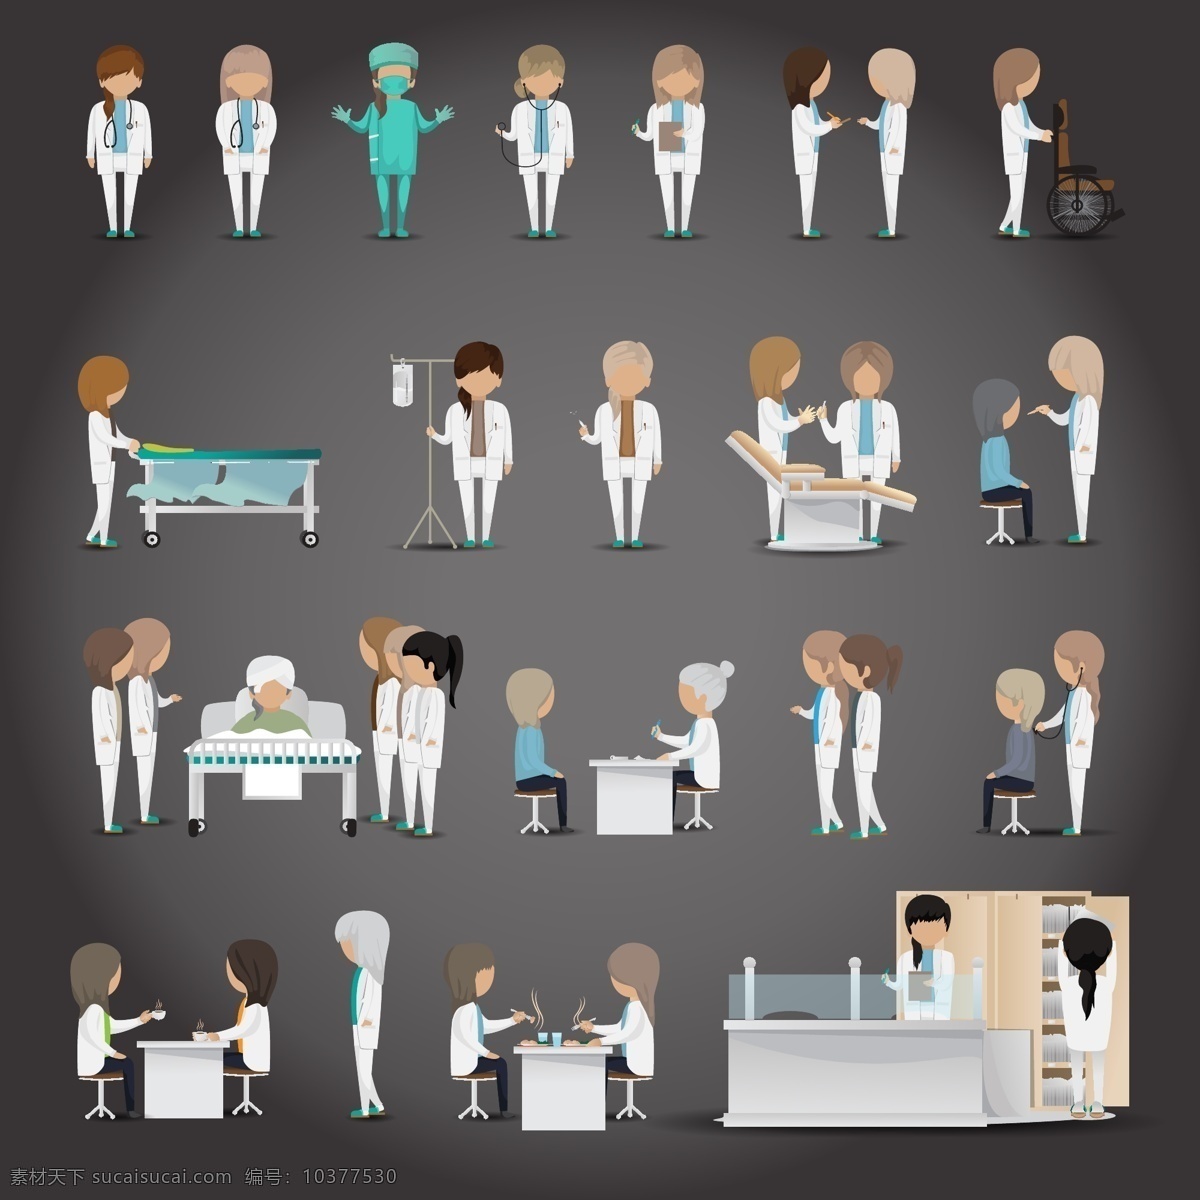 医疗 人员 角色 数据 图 矢量素材 装饰图案 设计元素 高清 看病 治疗 广告装饰图案